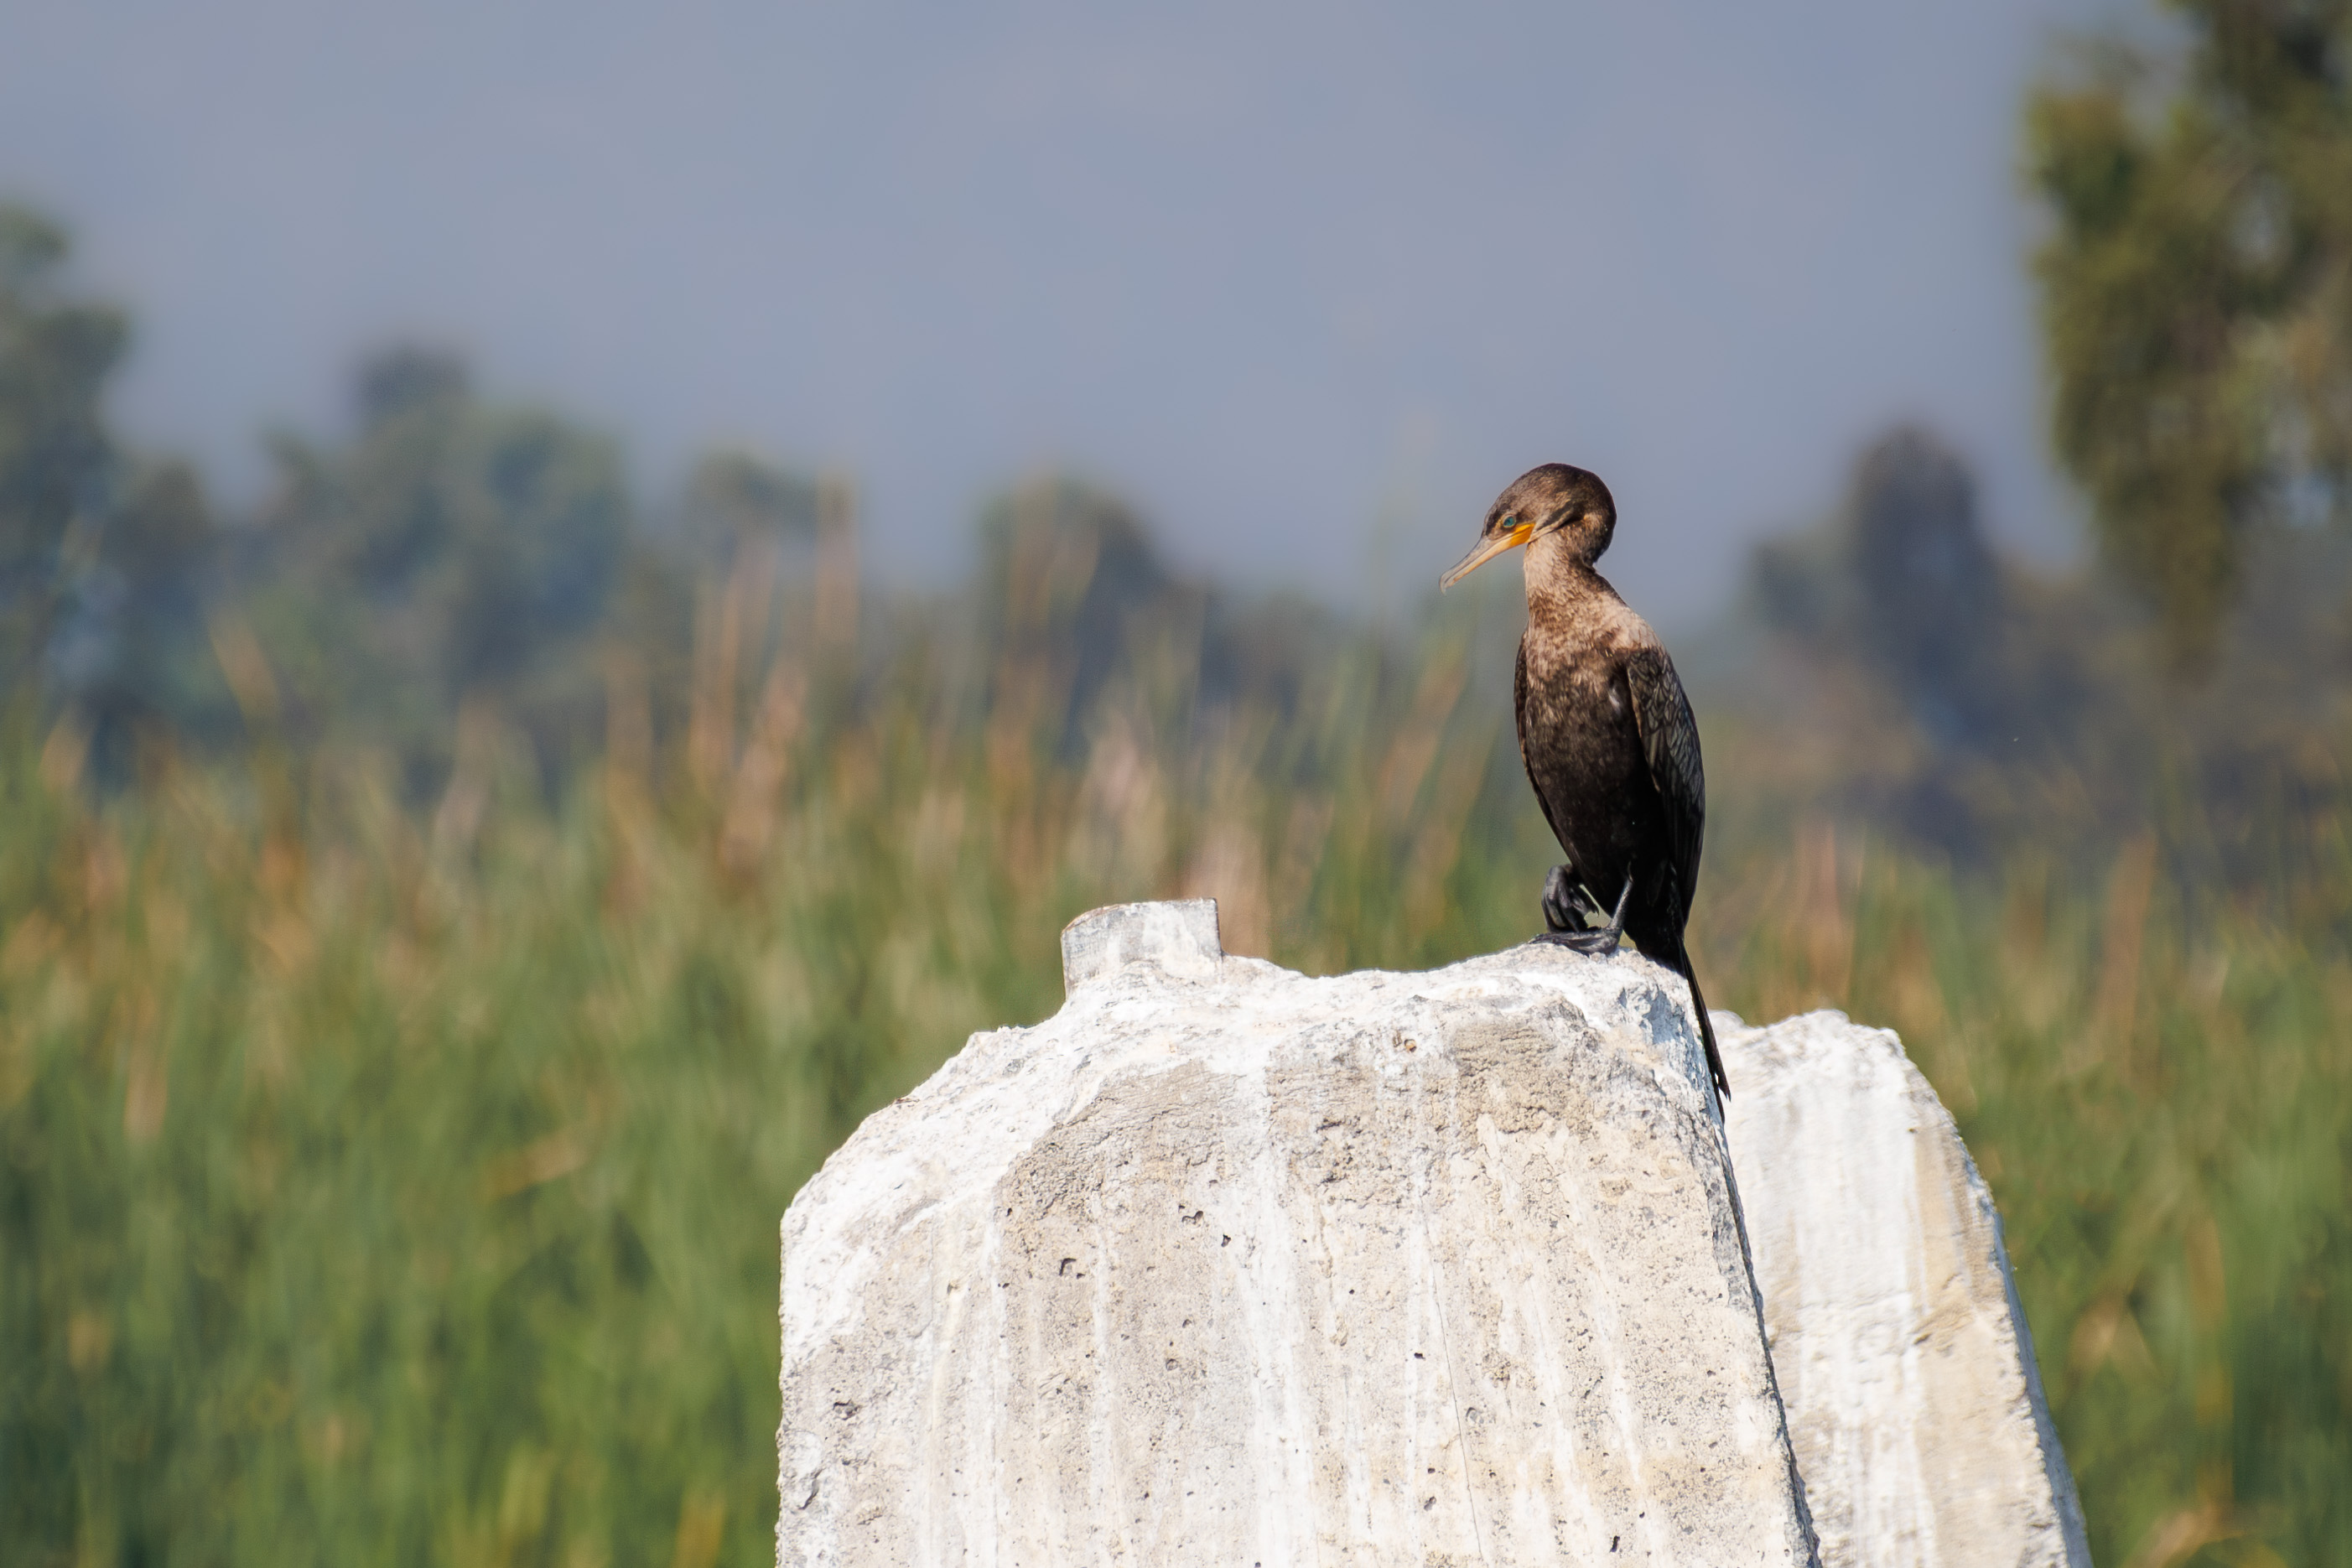 A nootropic cormorant perched on a concrete pile.